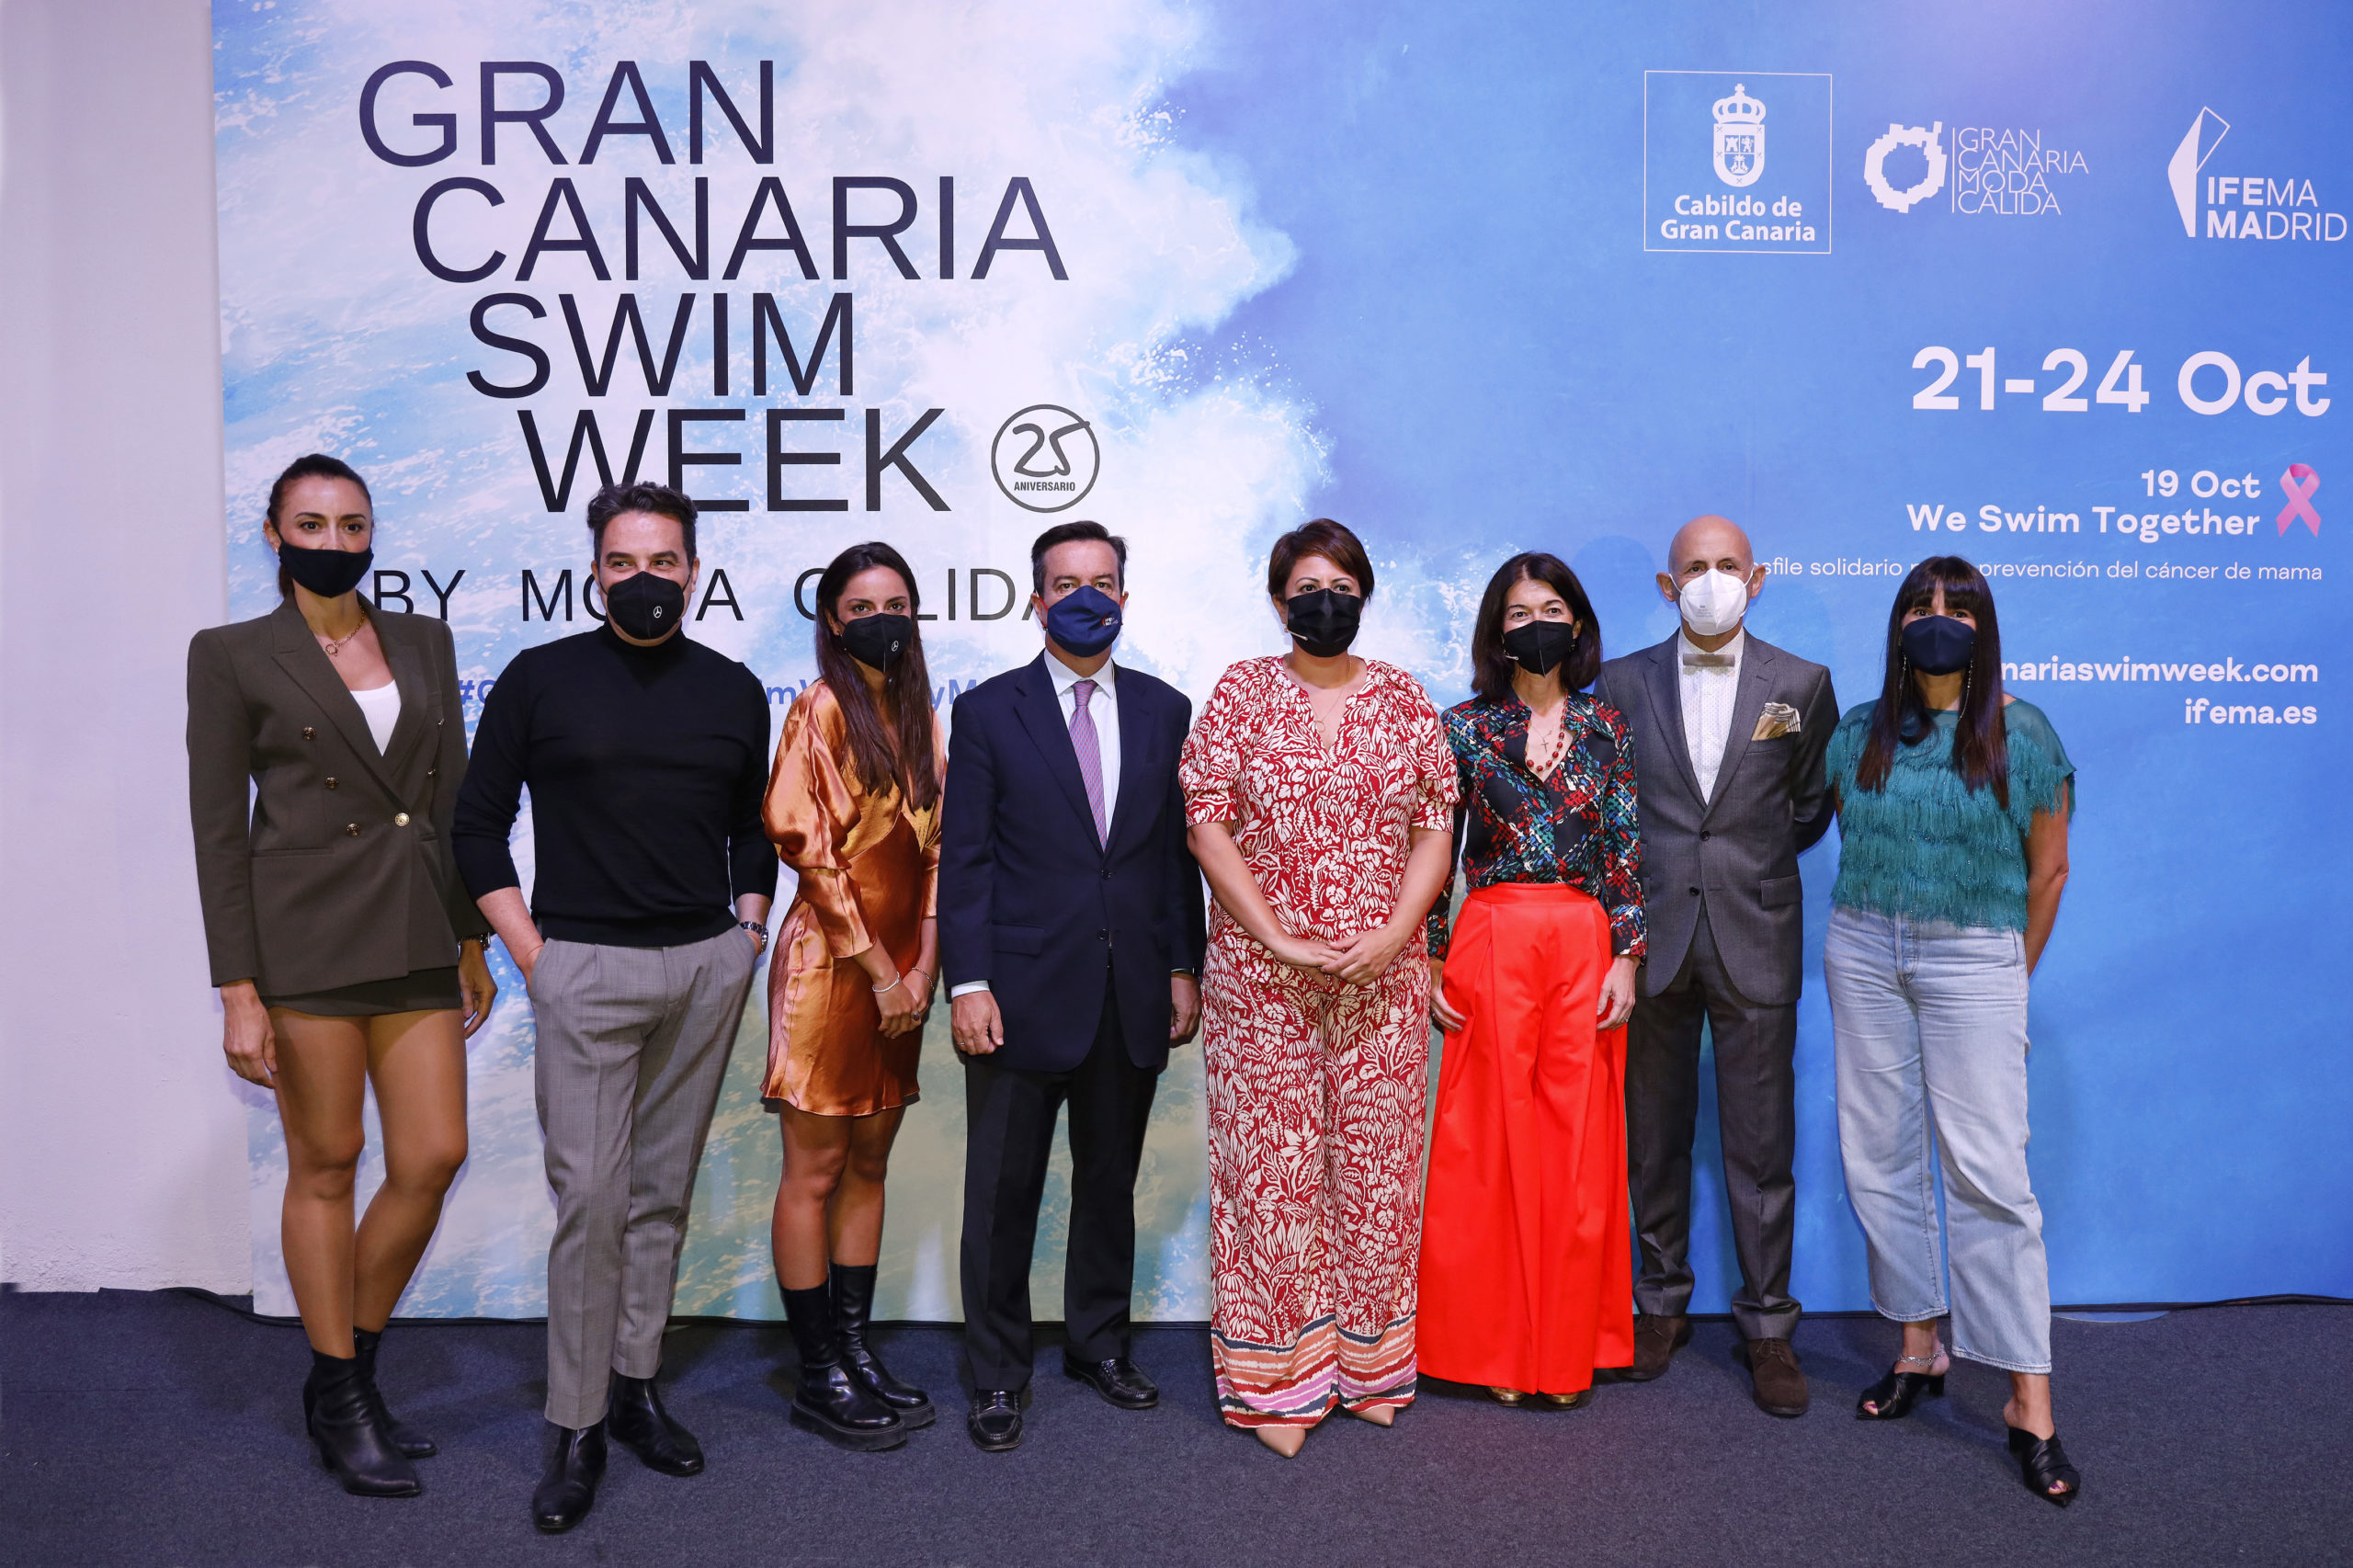 La pasarela Gran Canaria Swim Week by Moda Cálida celebra su 25º aniversario consolidada como el gran referente internacional de moda baño